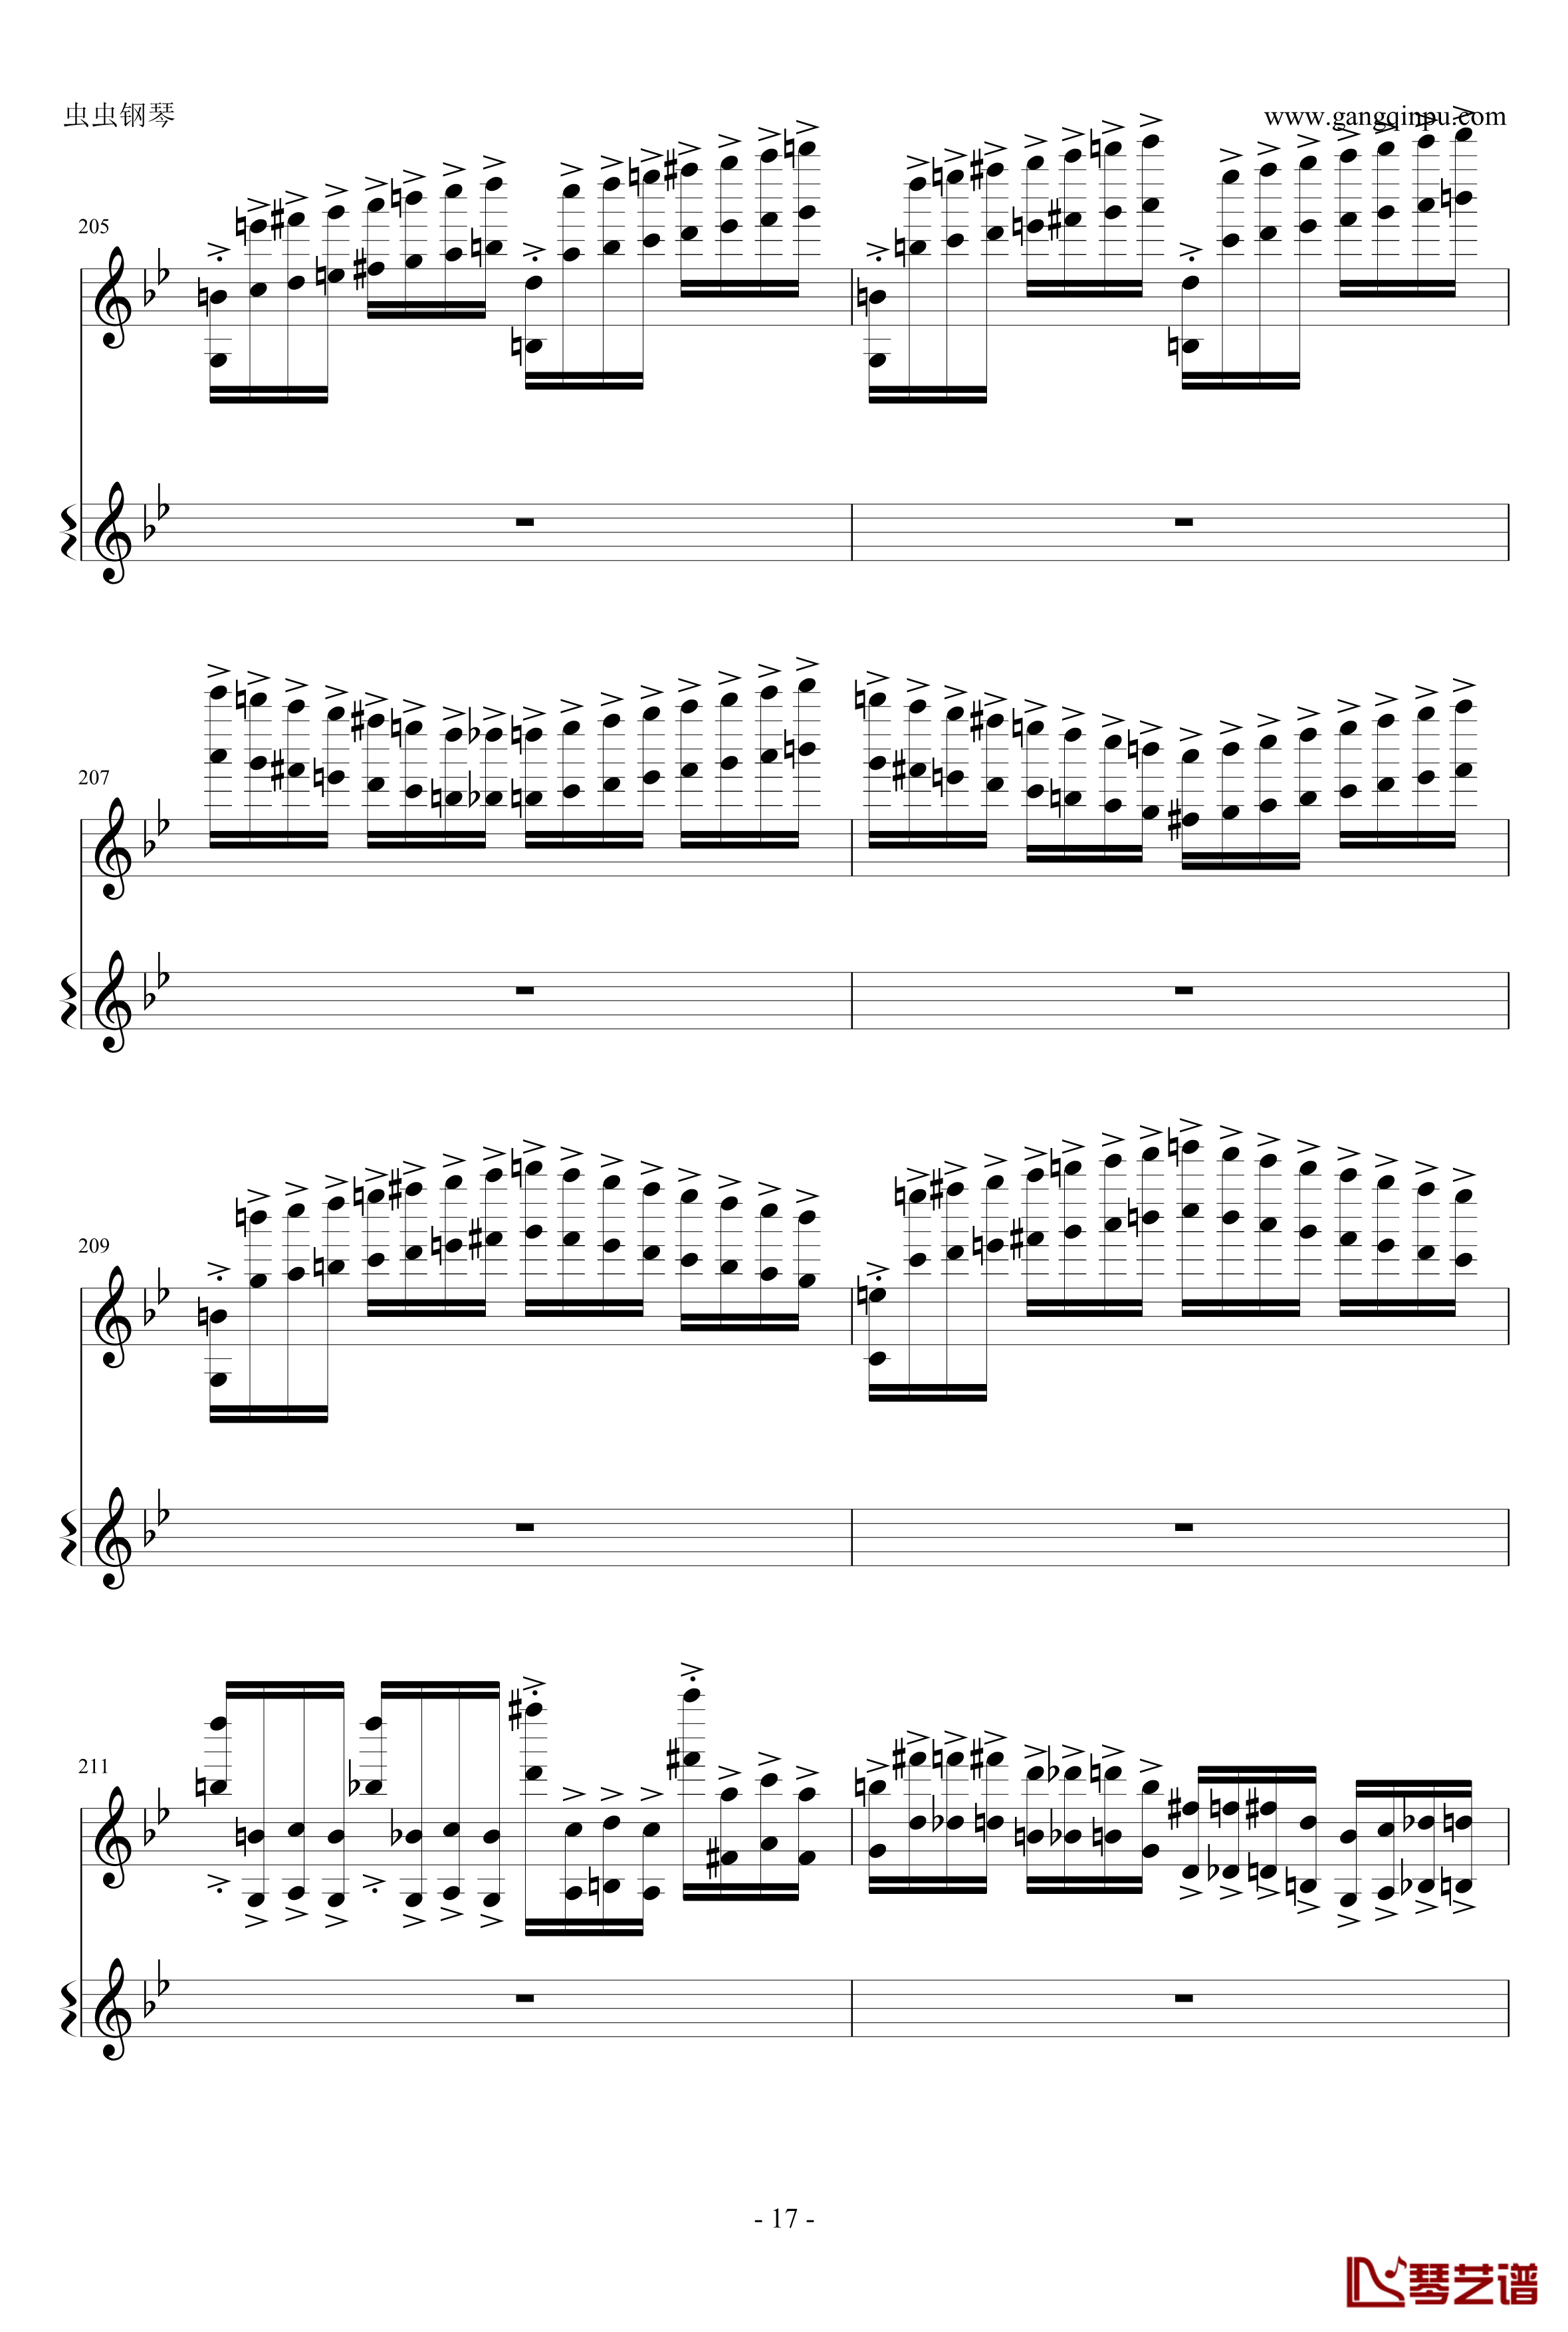 意大利国歌钢琴谱-变奏曲修改版-DXF17